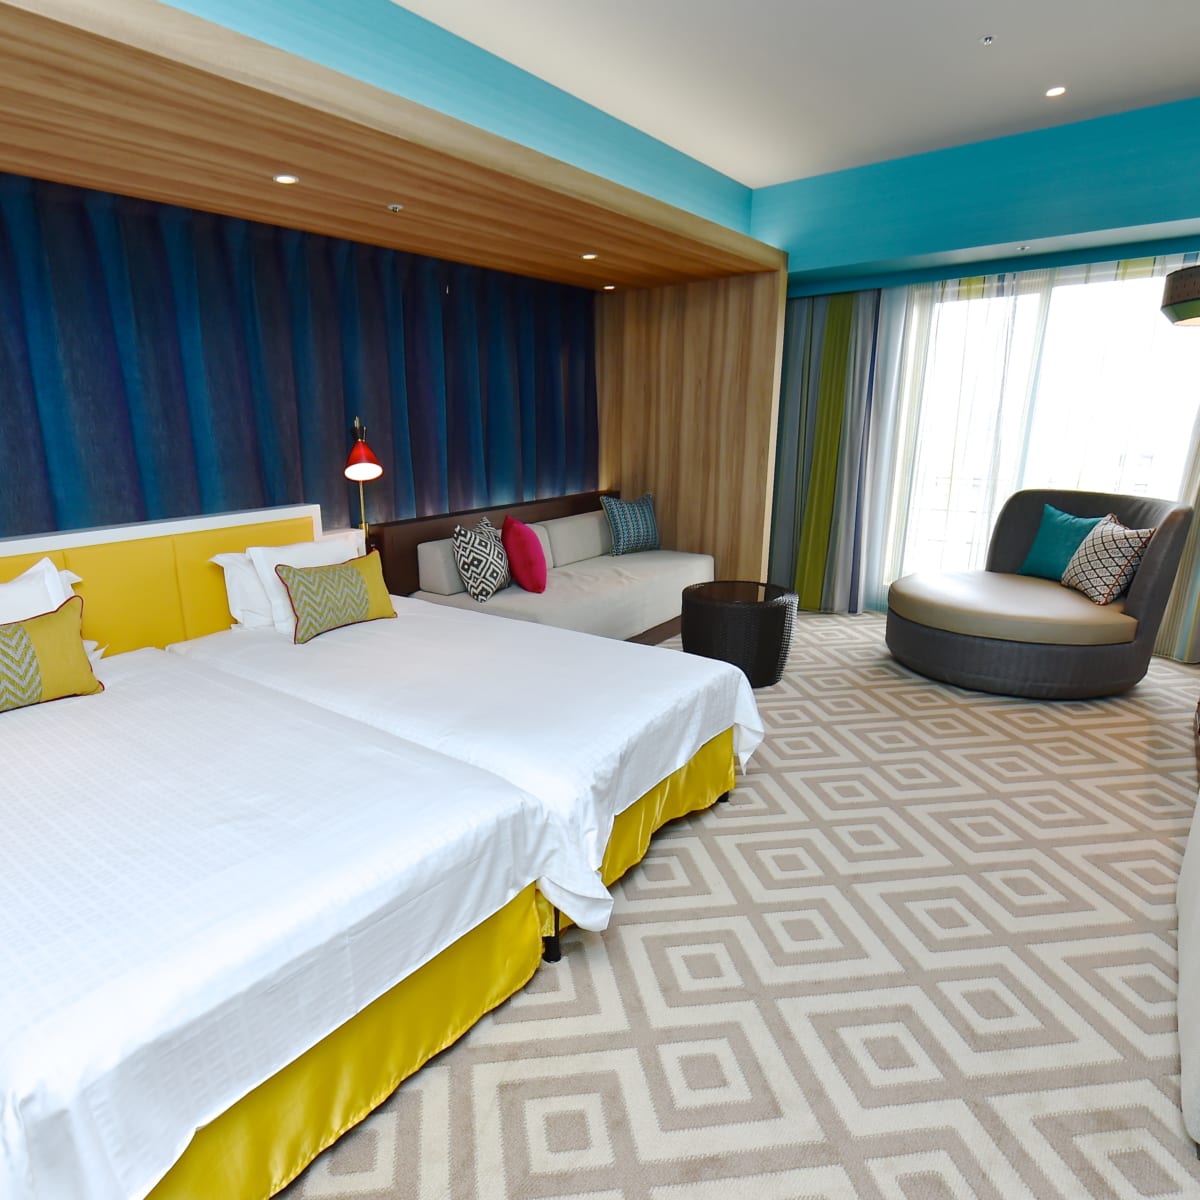 リゾート気分が楽しめる客室 ホテル ユニバーサル ポート カリブ海 イメージルーム Dtimes